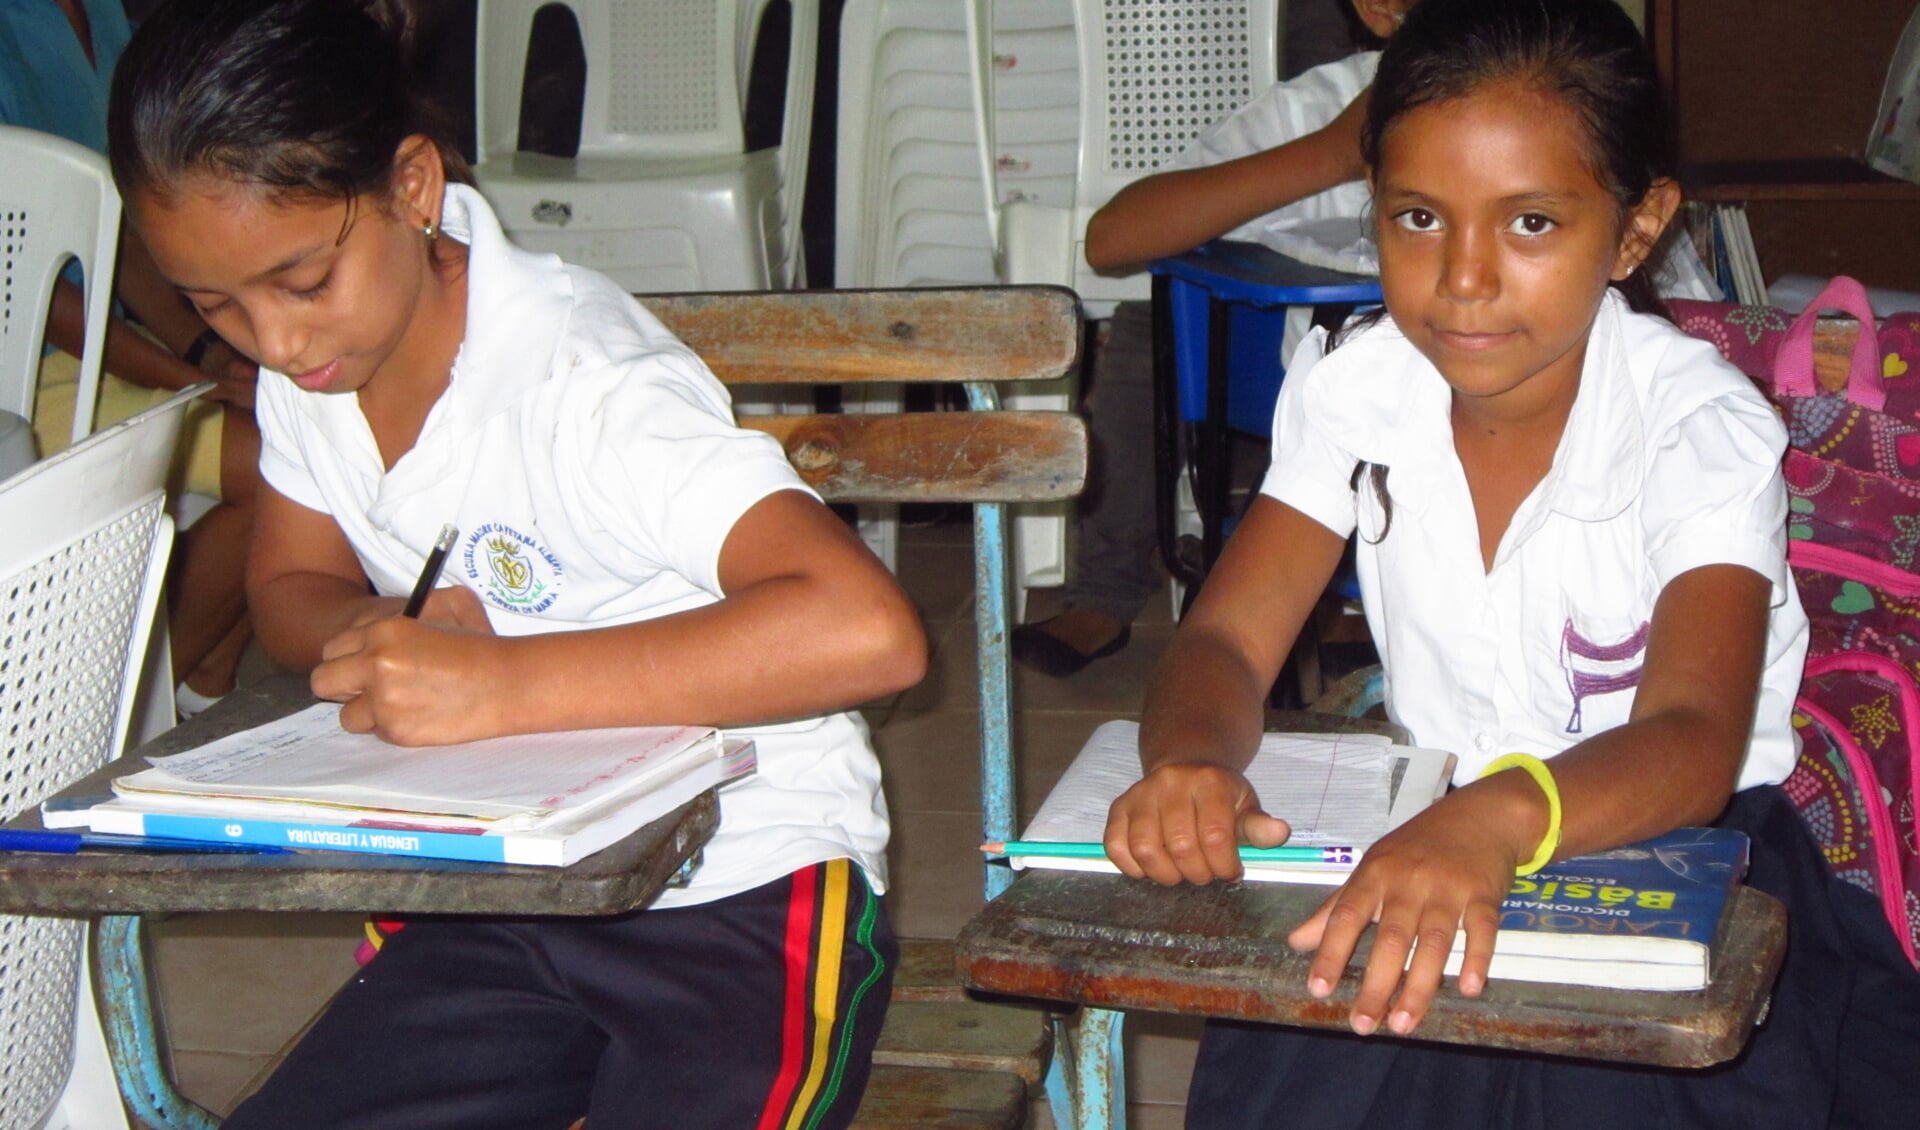 Met de vastenactie kon Stichting GESP boeken en leermiddelen aanschaffen voor een school in Nicaragua.